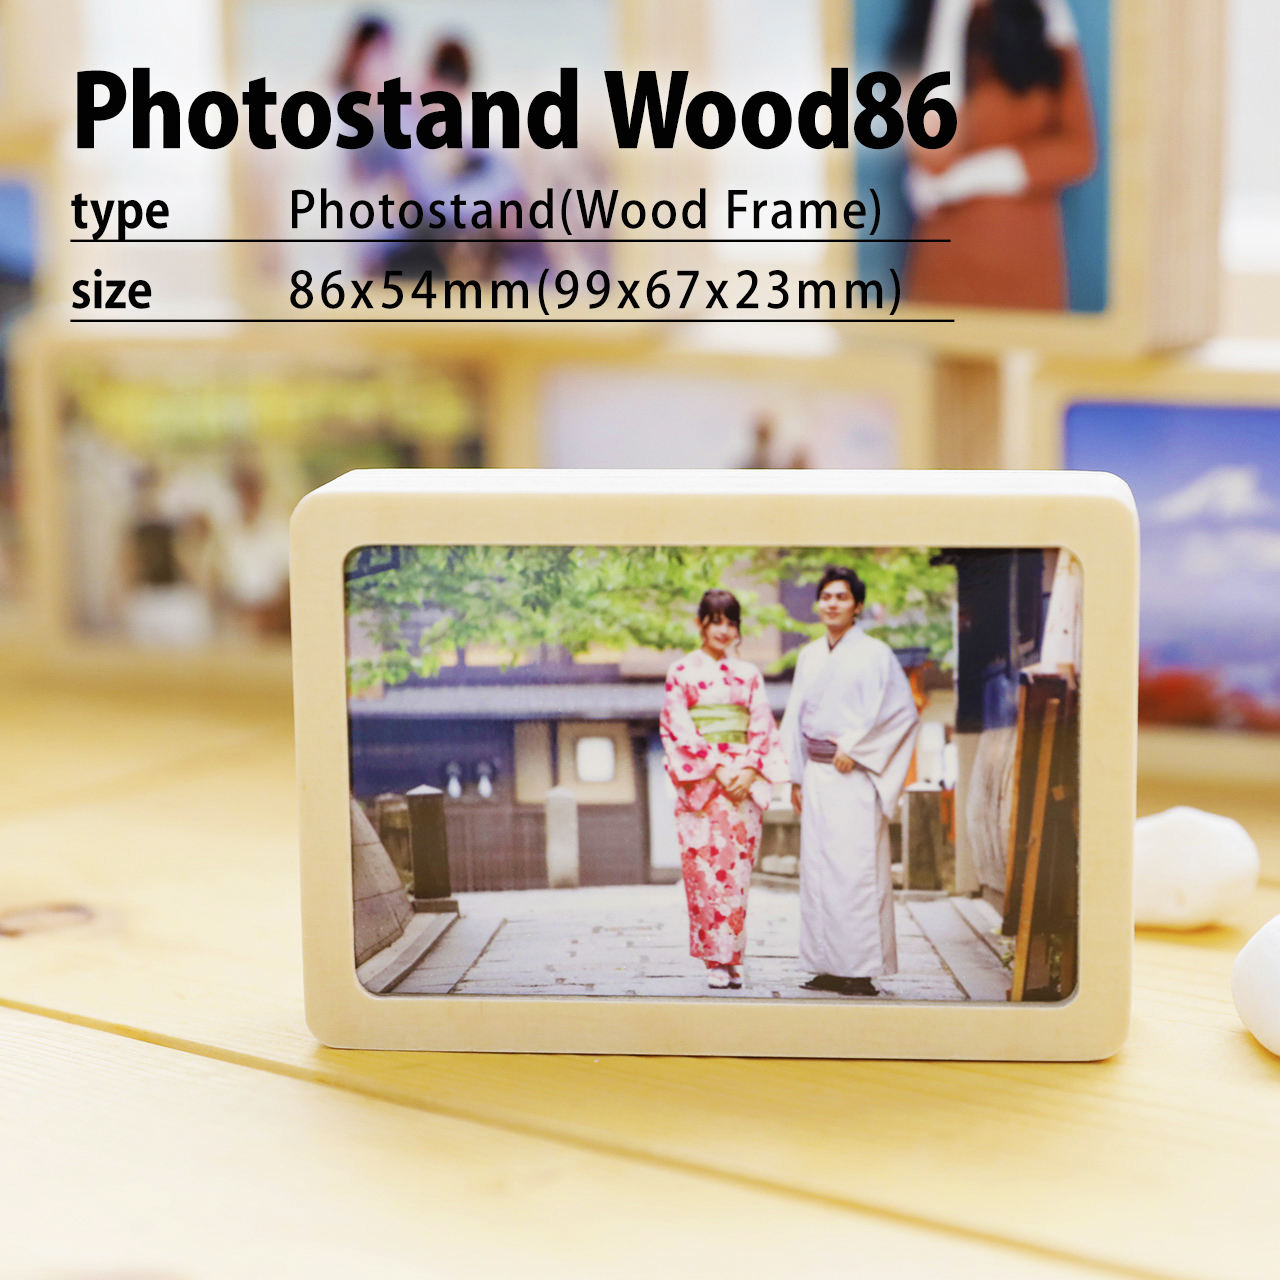 オーダーフォトフレーム木材86 木目フレームs ウッドフォトフレーム 写真プリント すまでこオンラインショップースマホの写真でオリジナルアイテム 作成